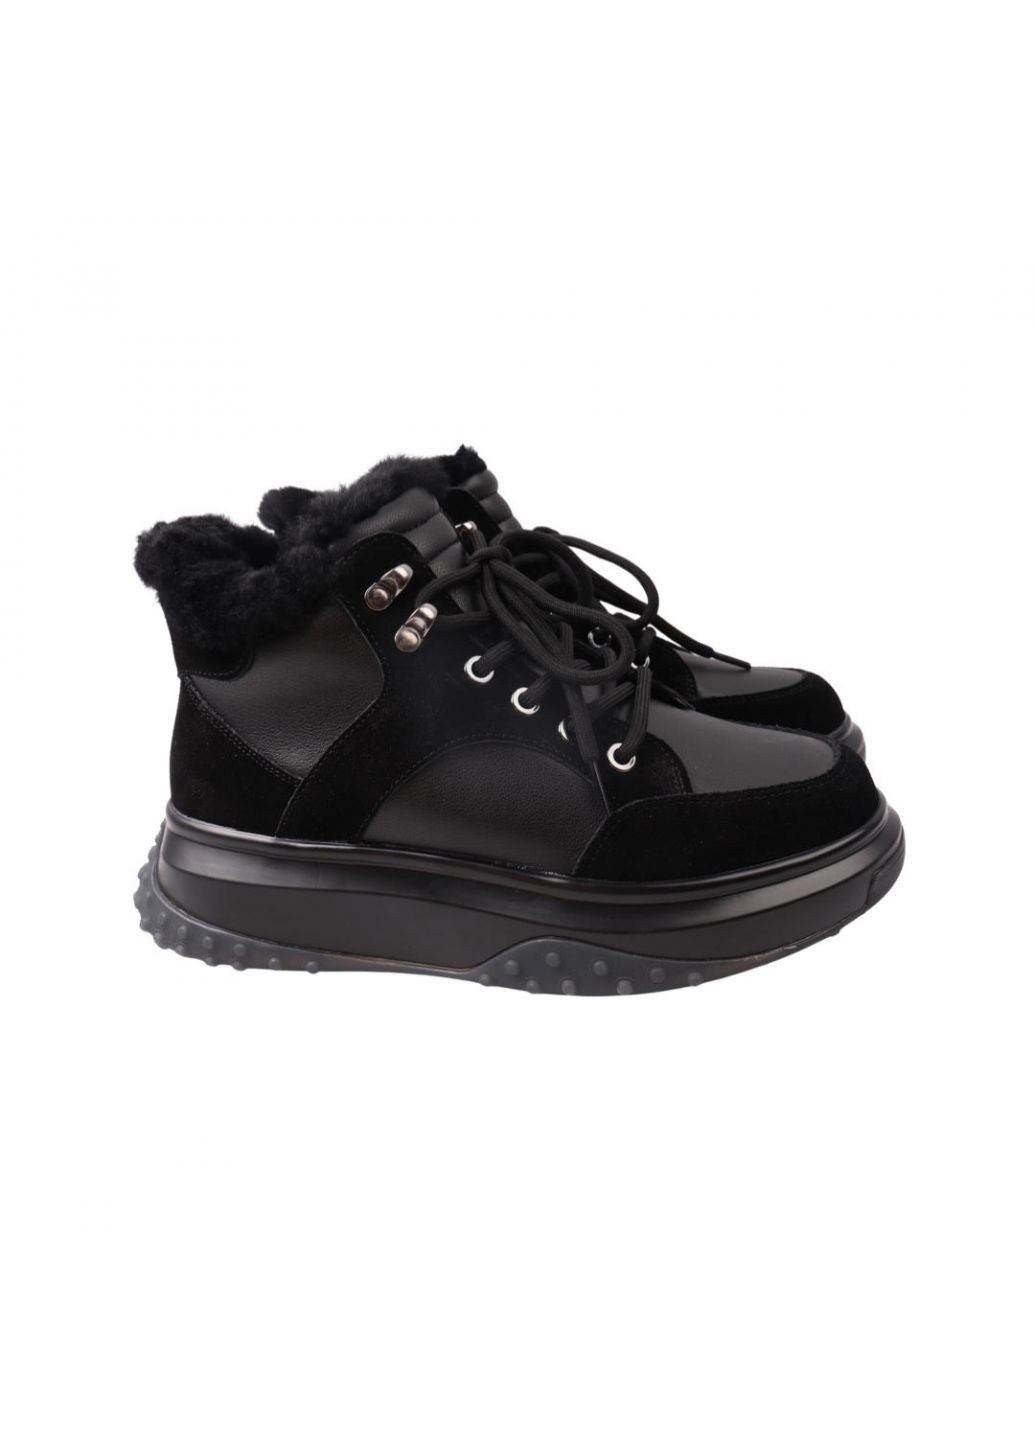 Черные ботинки женские черные натуральная кожа Lifexpert 713-22ZHS